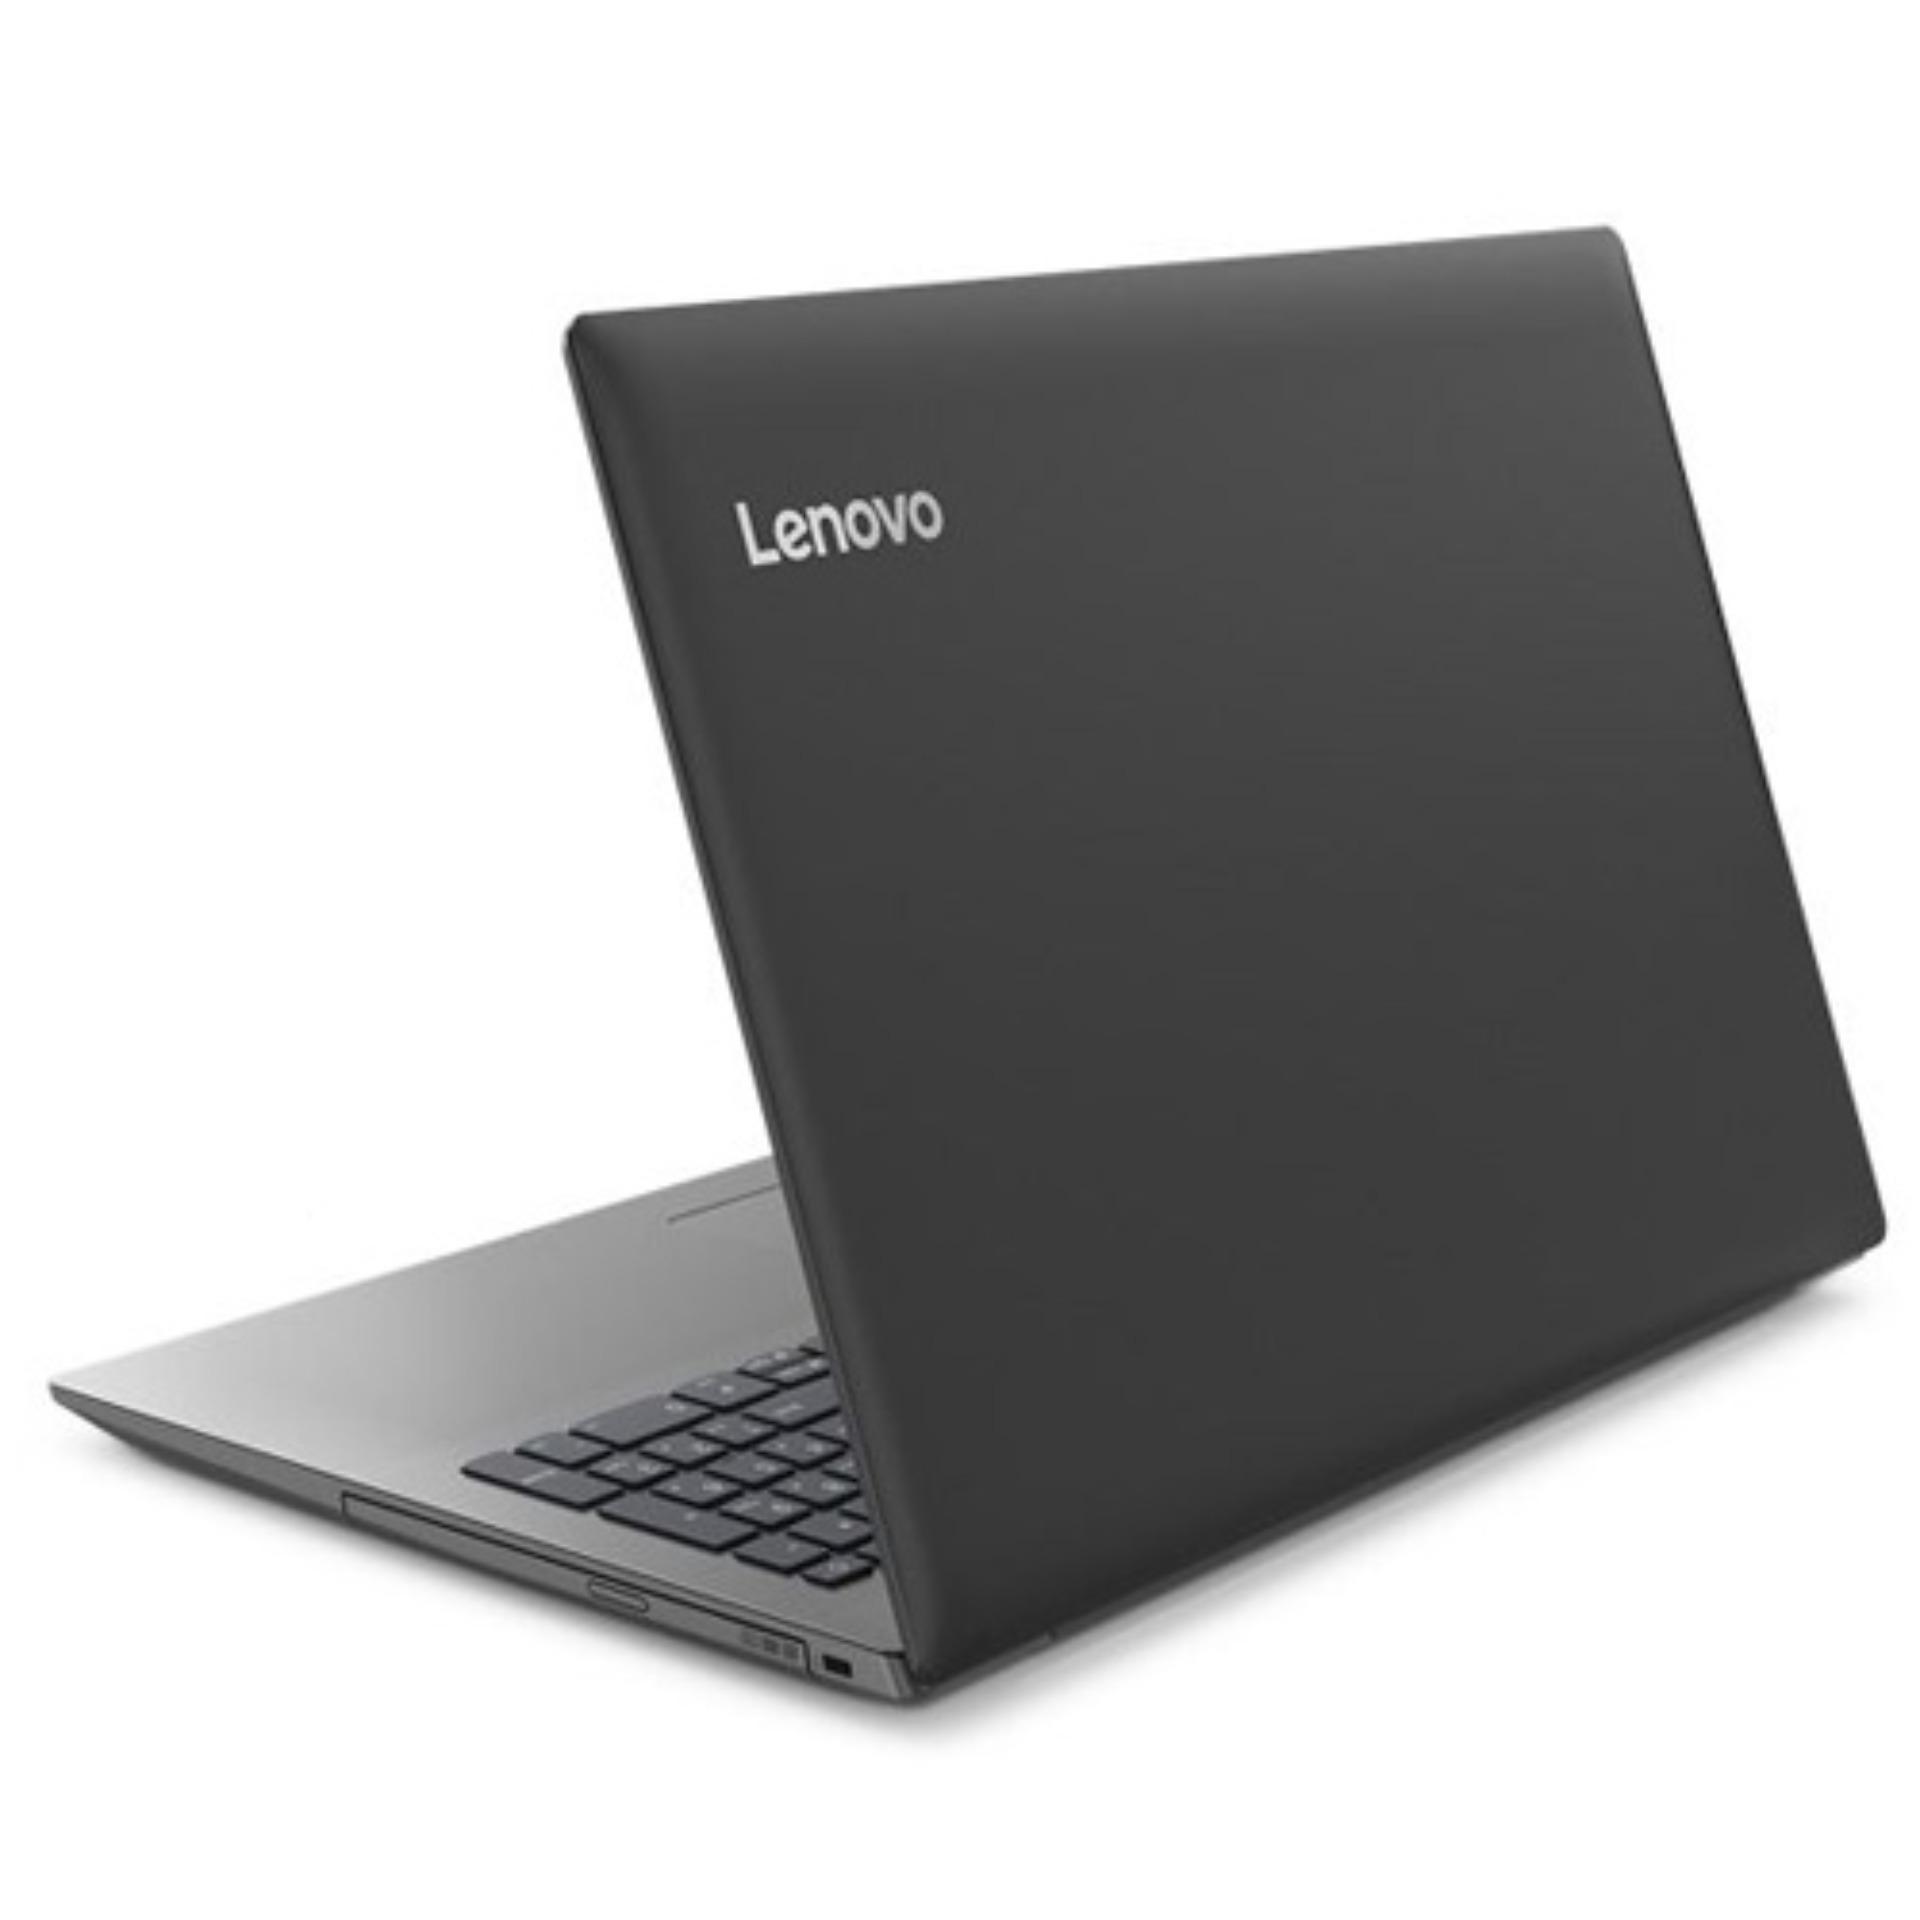 Spesifikasi Lenovo Ideapad 330 14ast 3eid dan Update Harga